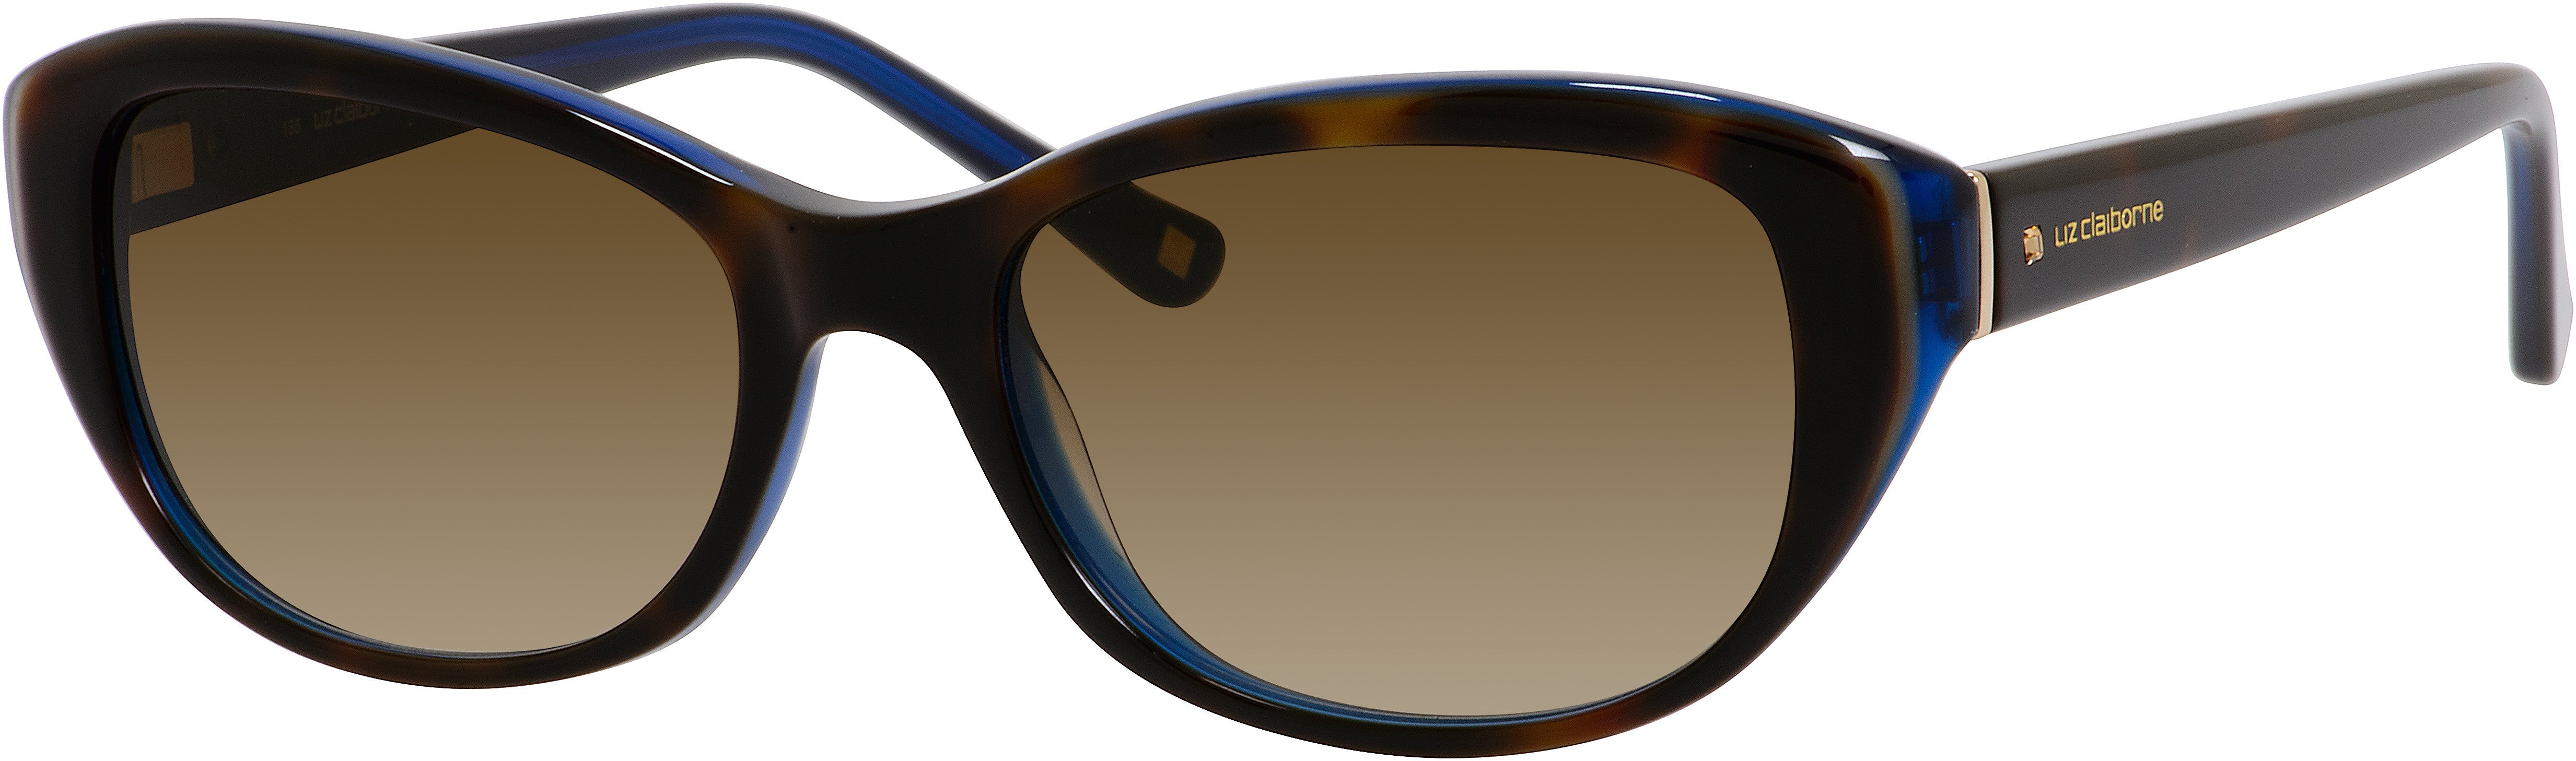  Liz Claiborne 561/S Oval Sunglasses 0DW2-0DW2  Havana Blue (CC Brown Gradient)